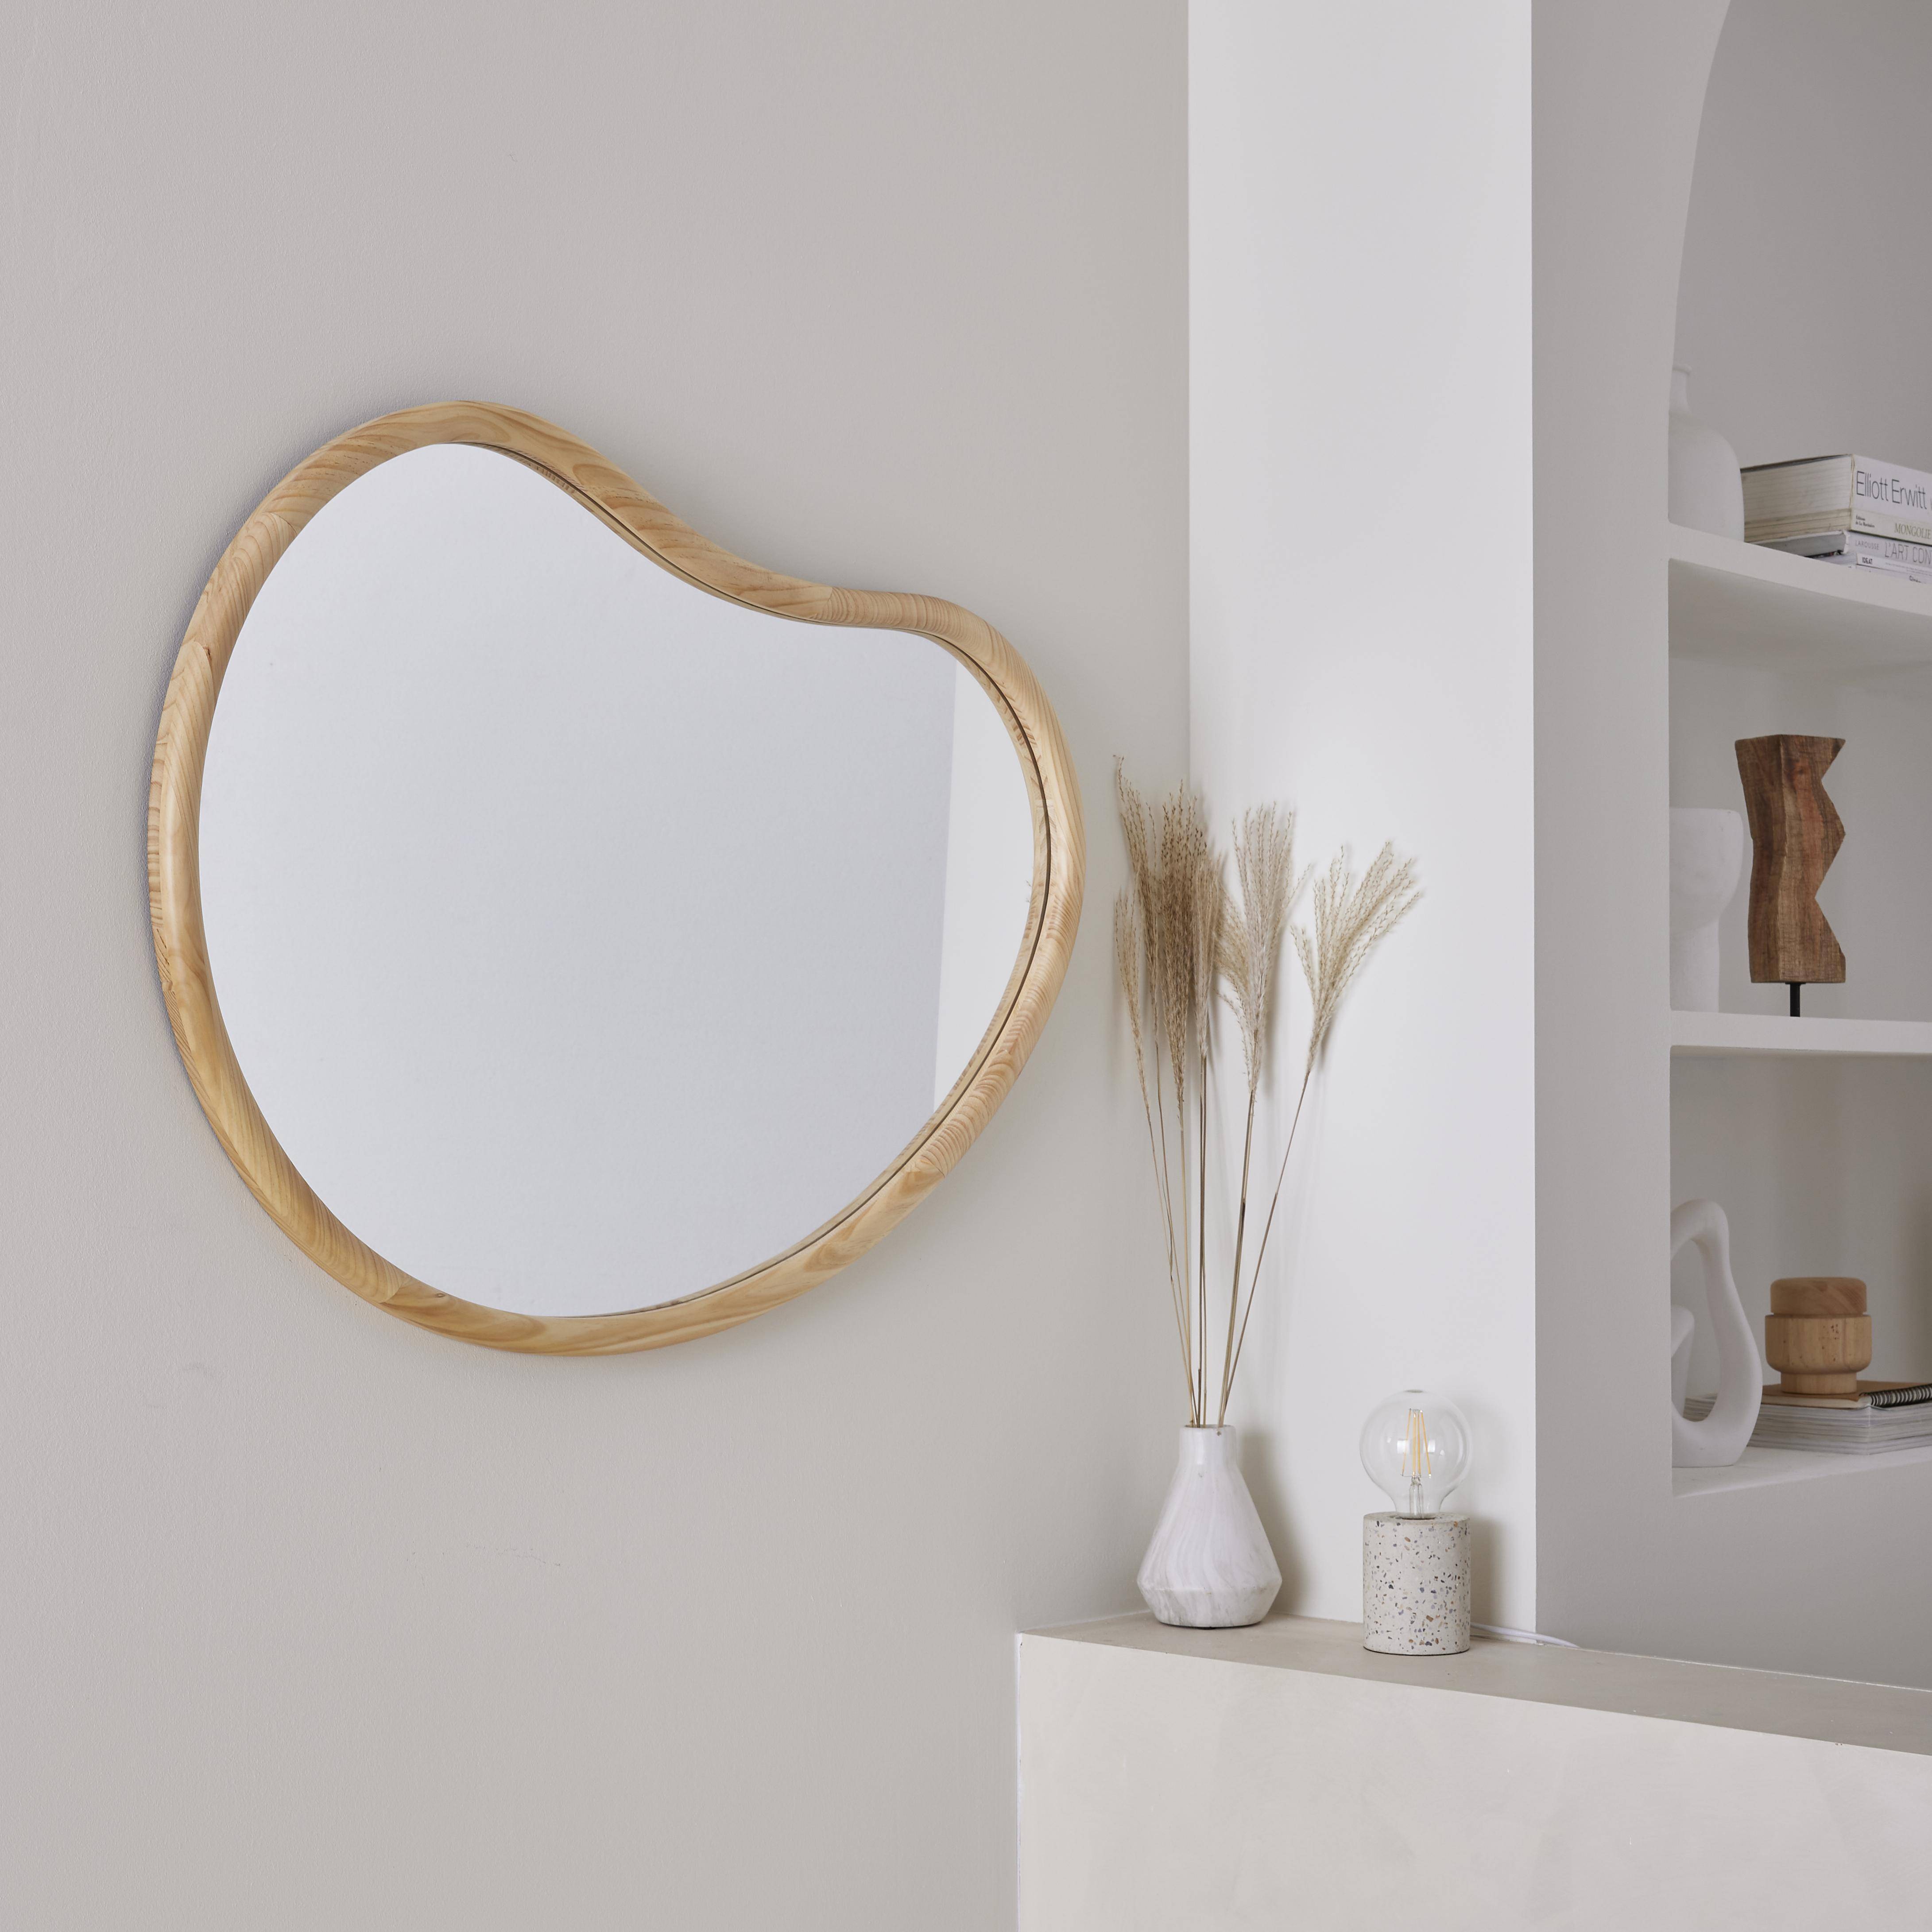 Organischer Spiegel aus Tannenholz 95cm, 3cm dick, naturfarben, für Eingang, Schlafzimmer oder Badezimmer - Jacob Photo2